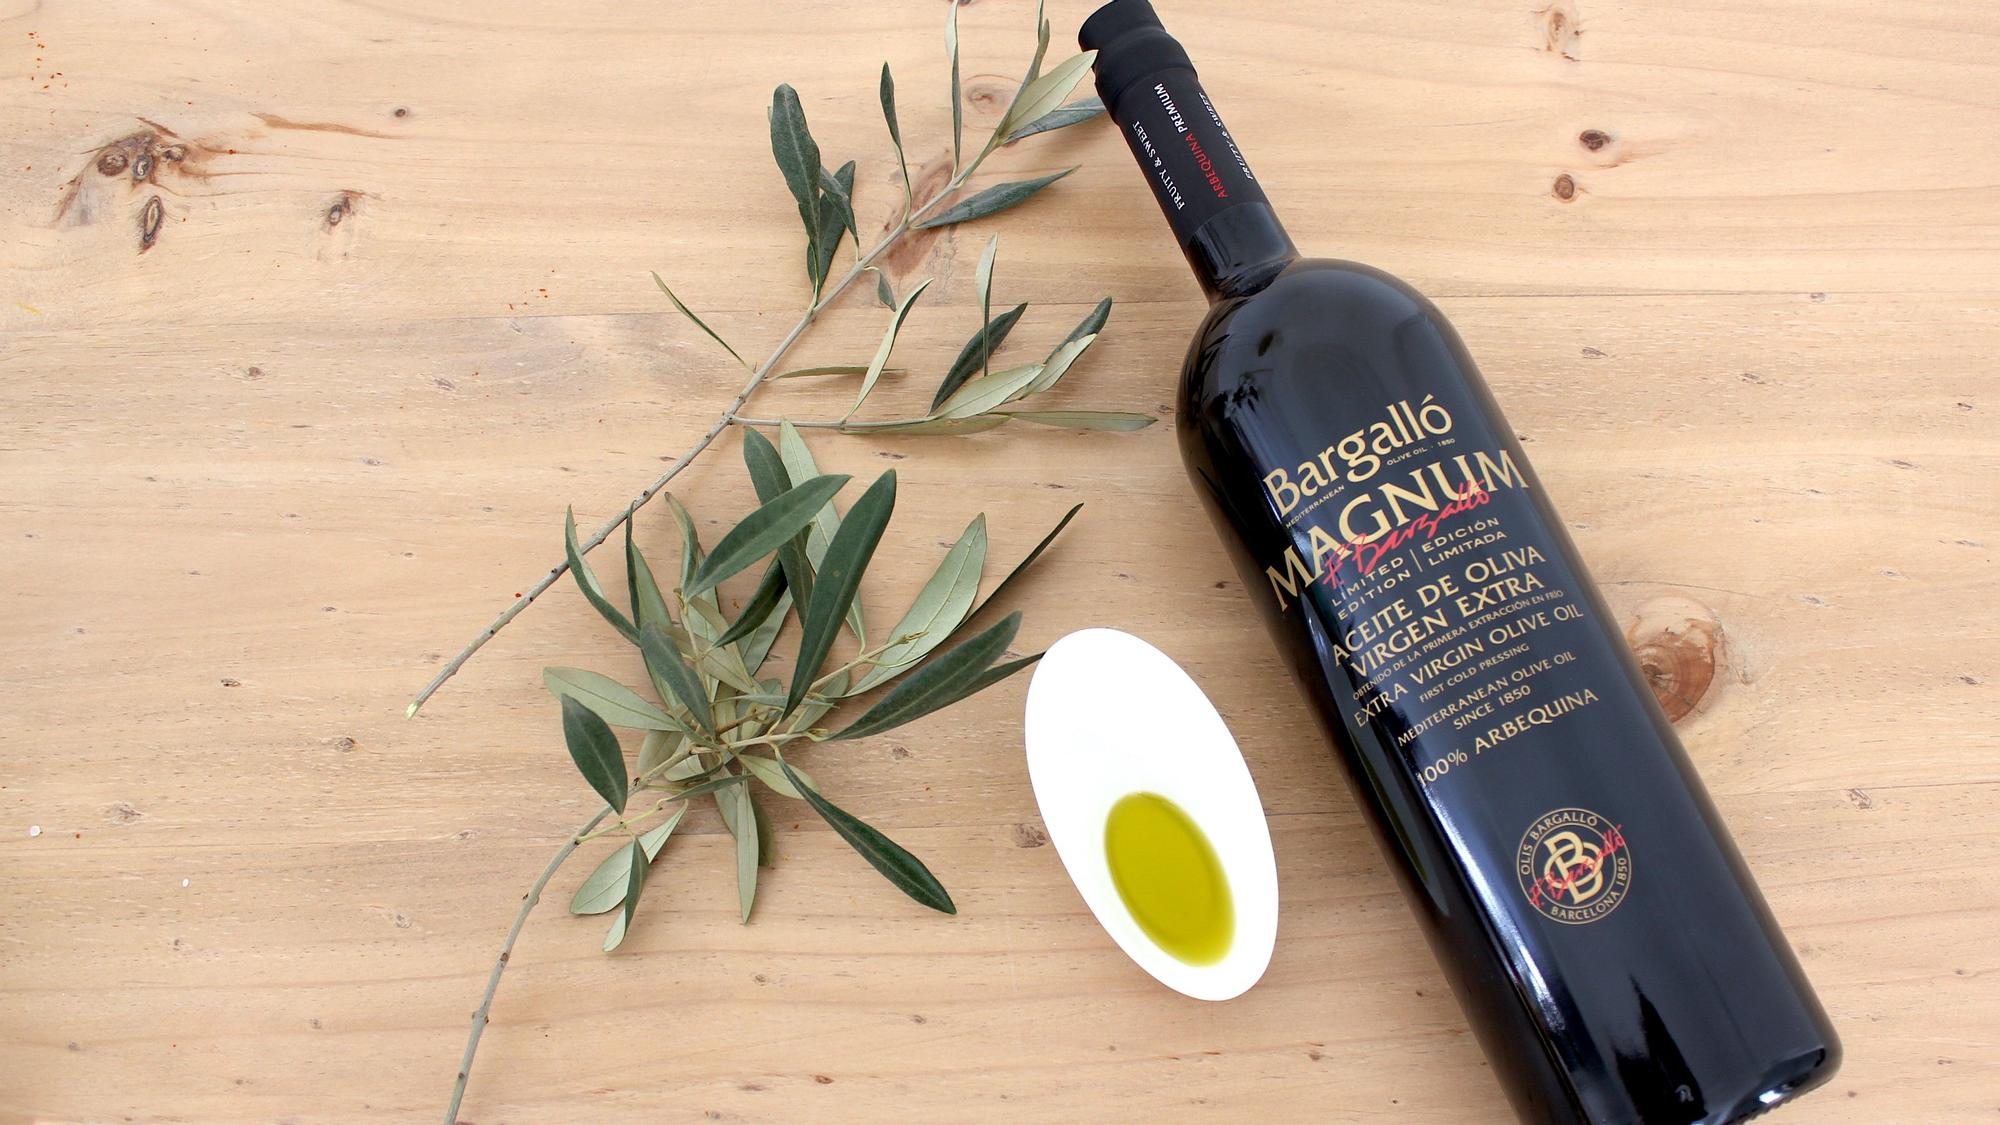 Aceite de oliva suave (1 l) bargalló